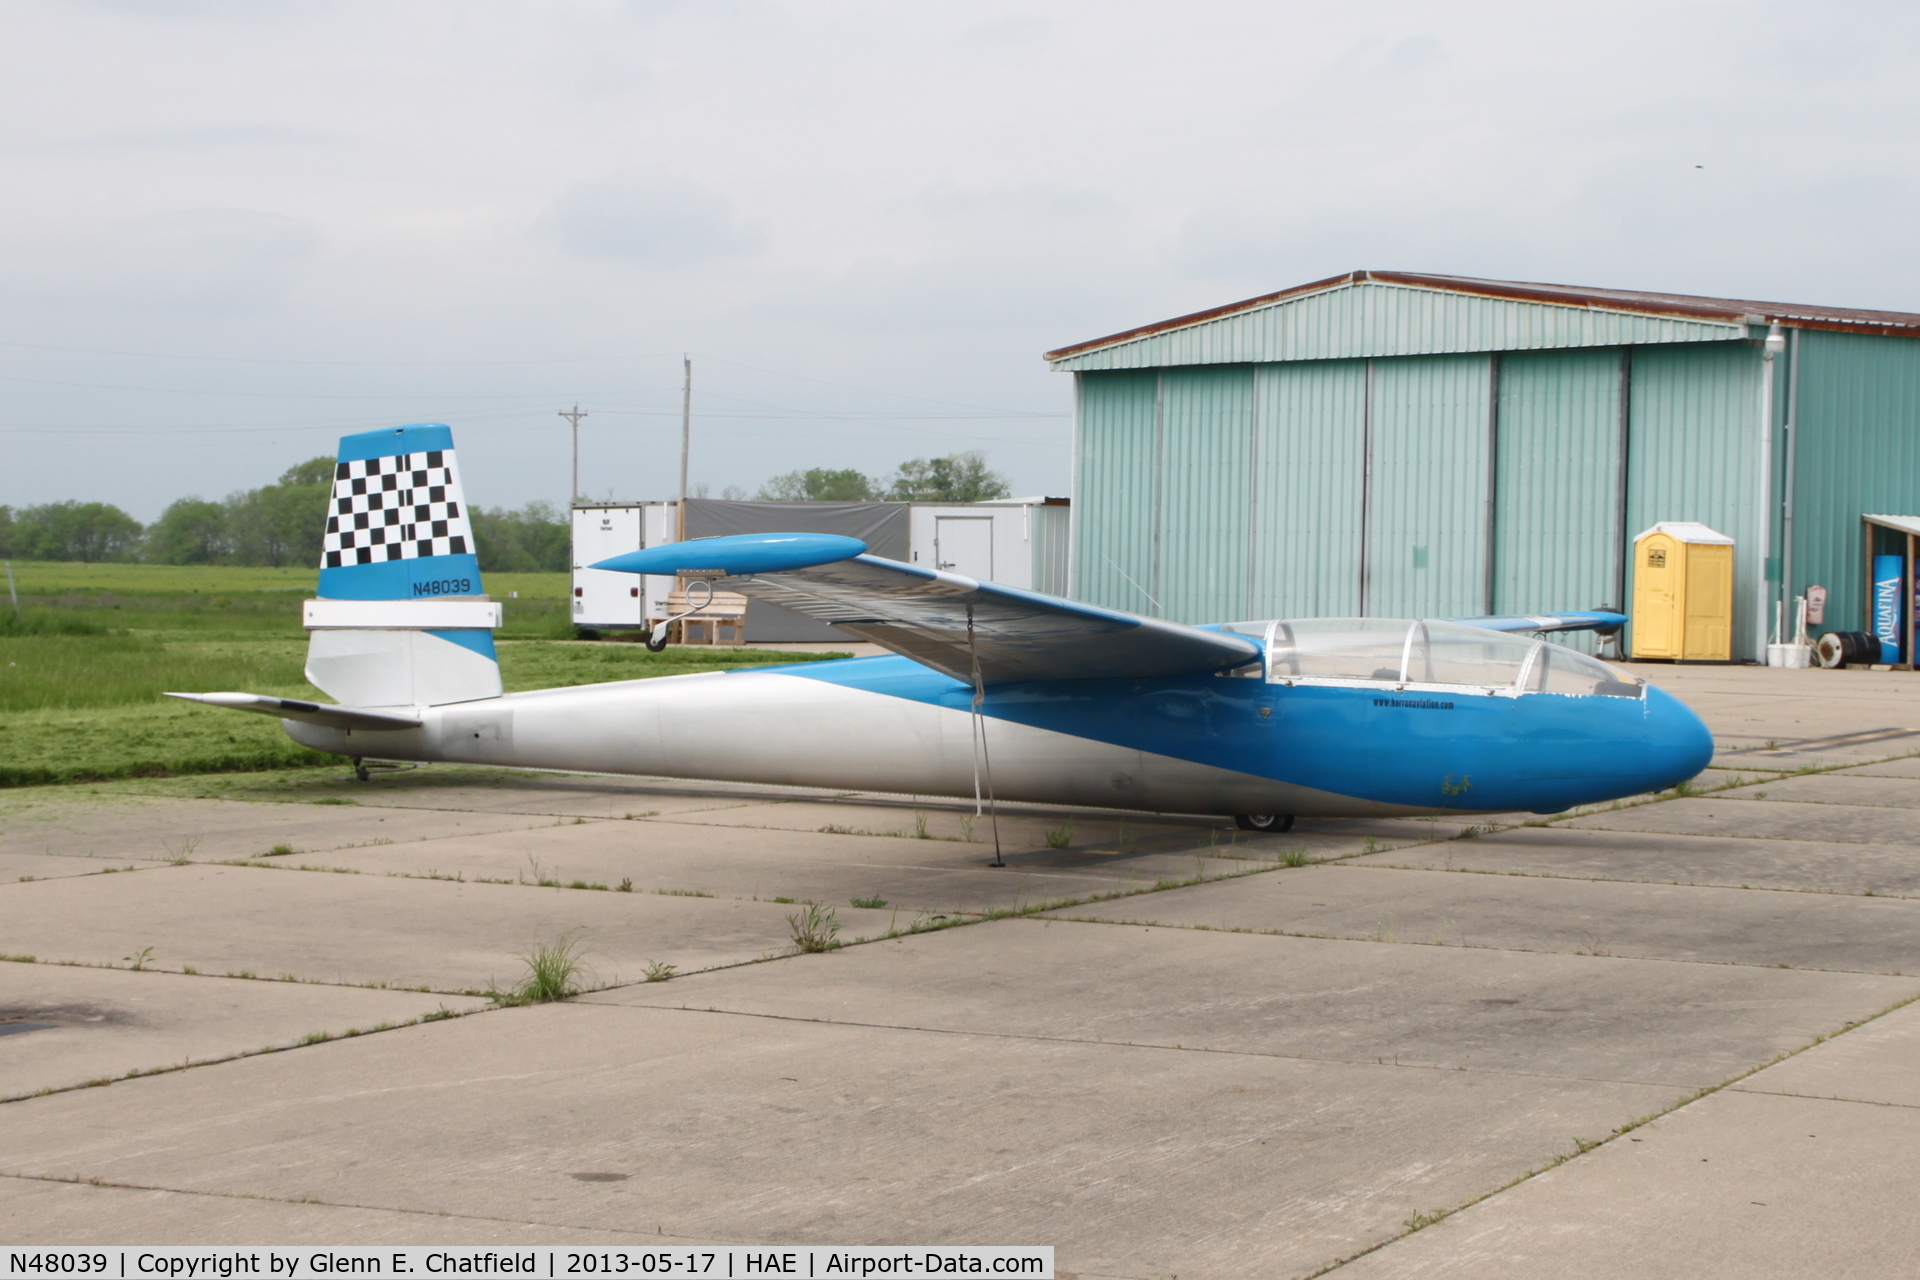 N48039, Let L-13 Blanik C/N 026102, One of two gliders on the ramp